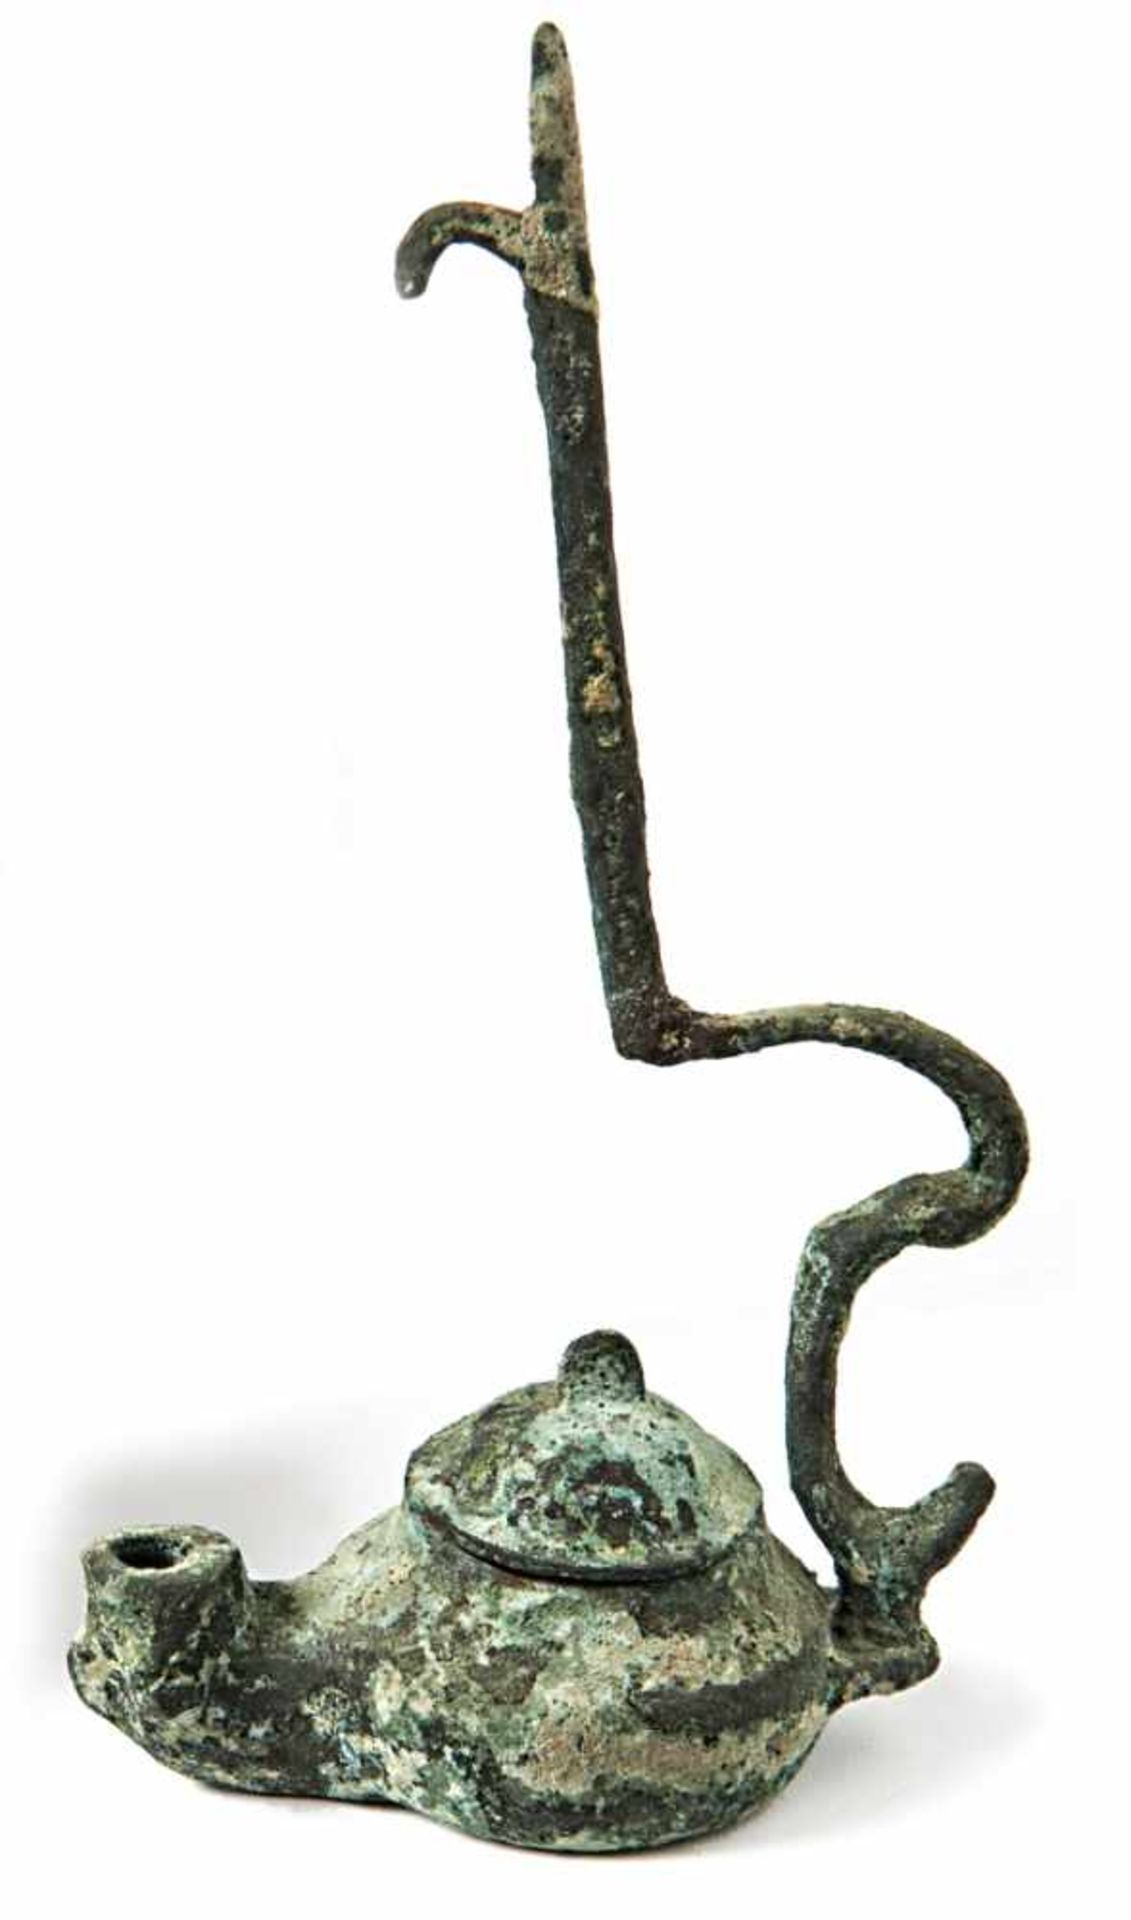 ÖllampeWohl byzantinisch, 1000 n. Chr.Bauchige Form mit hochgewölbtem Deckel; Aufhängebügel. Bronze.